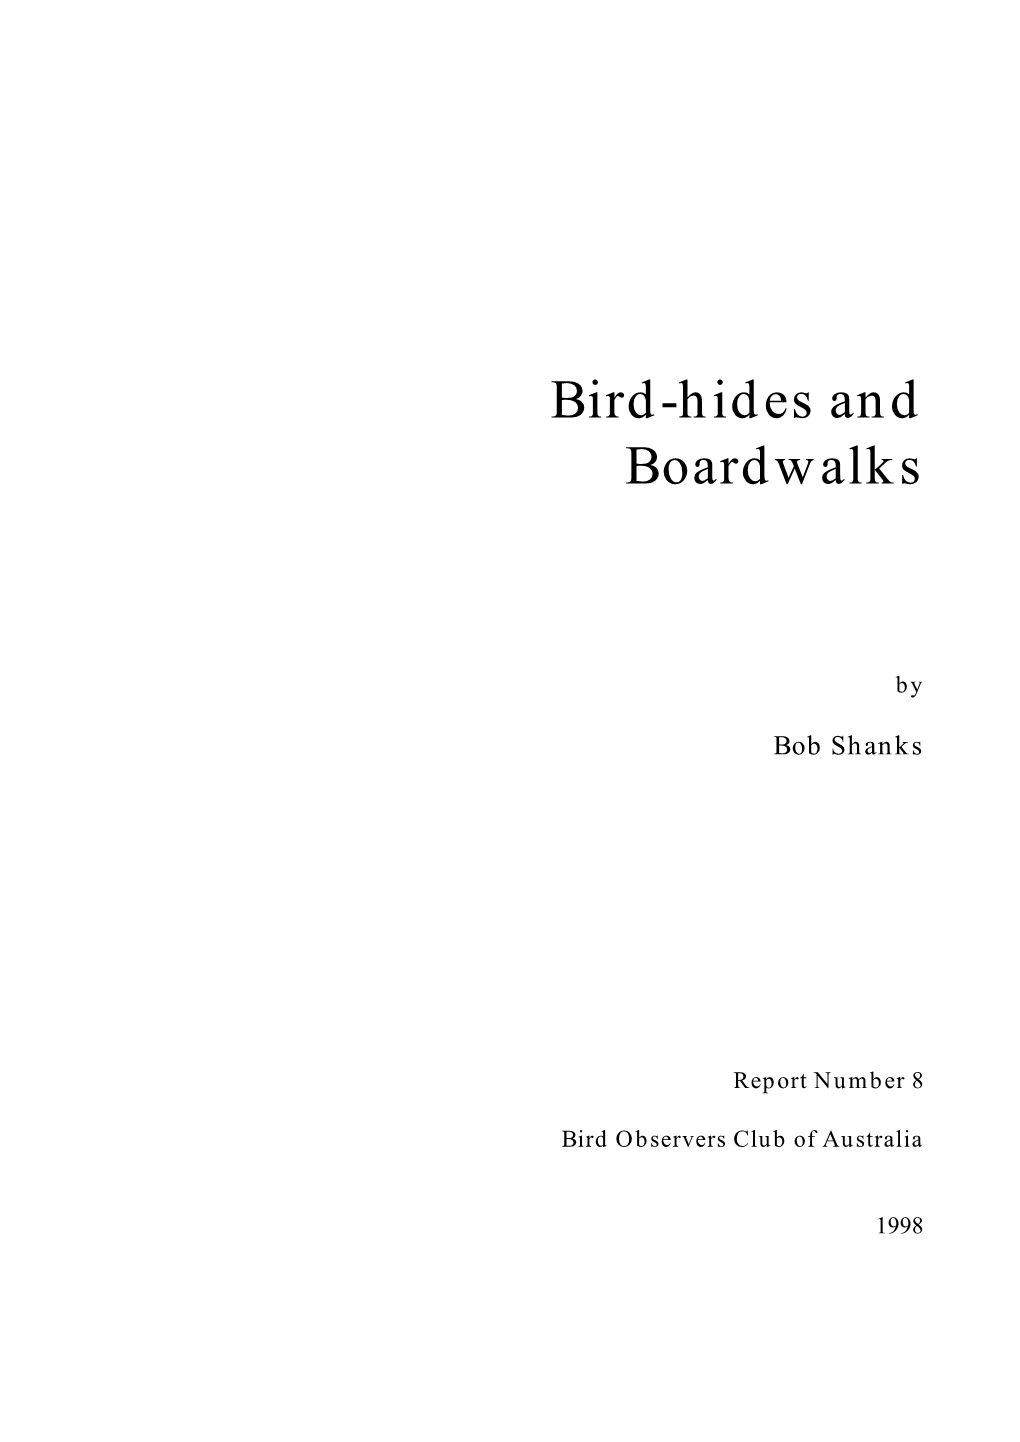 Bird-Hides and Boardwalks